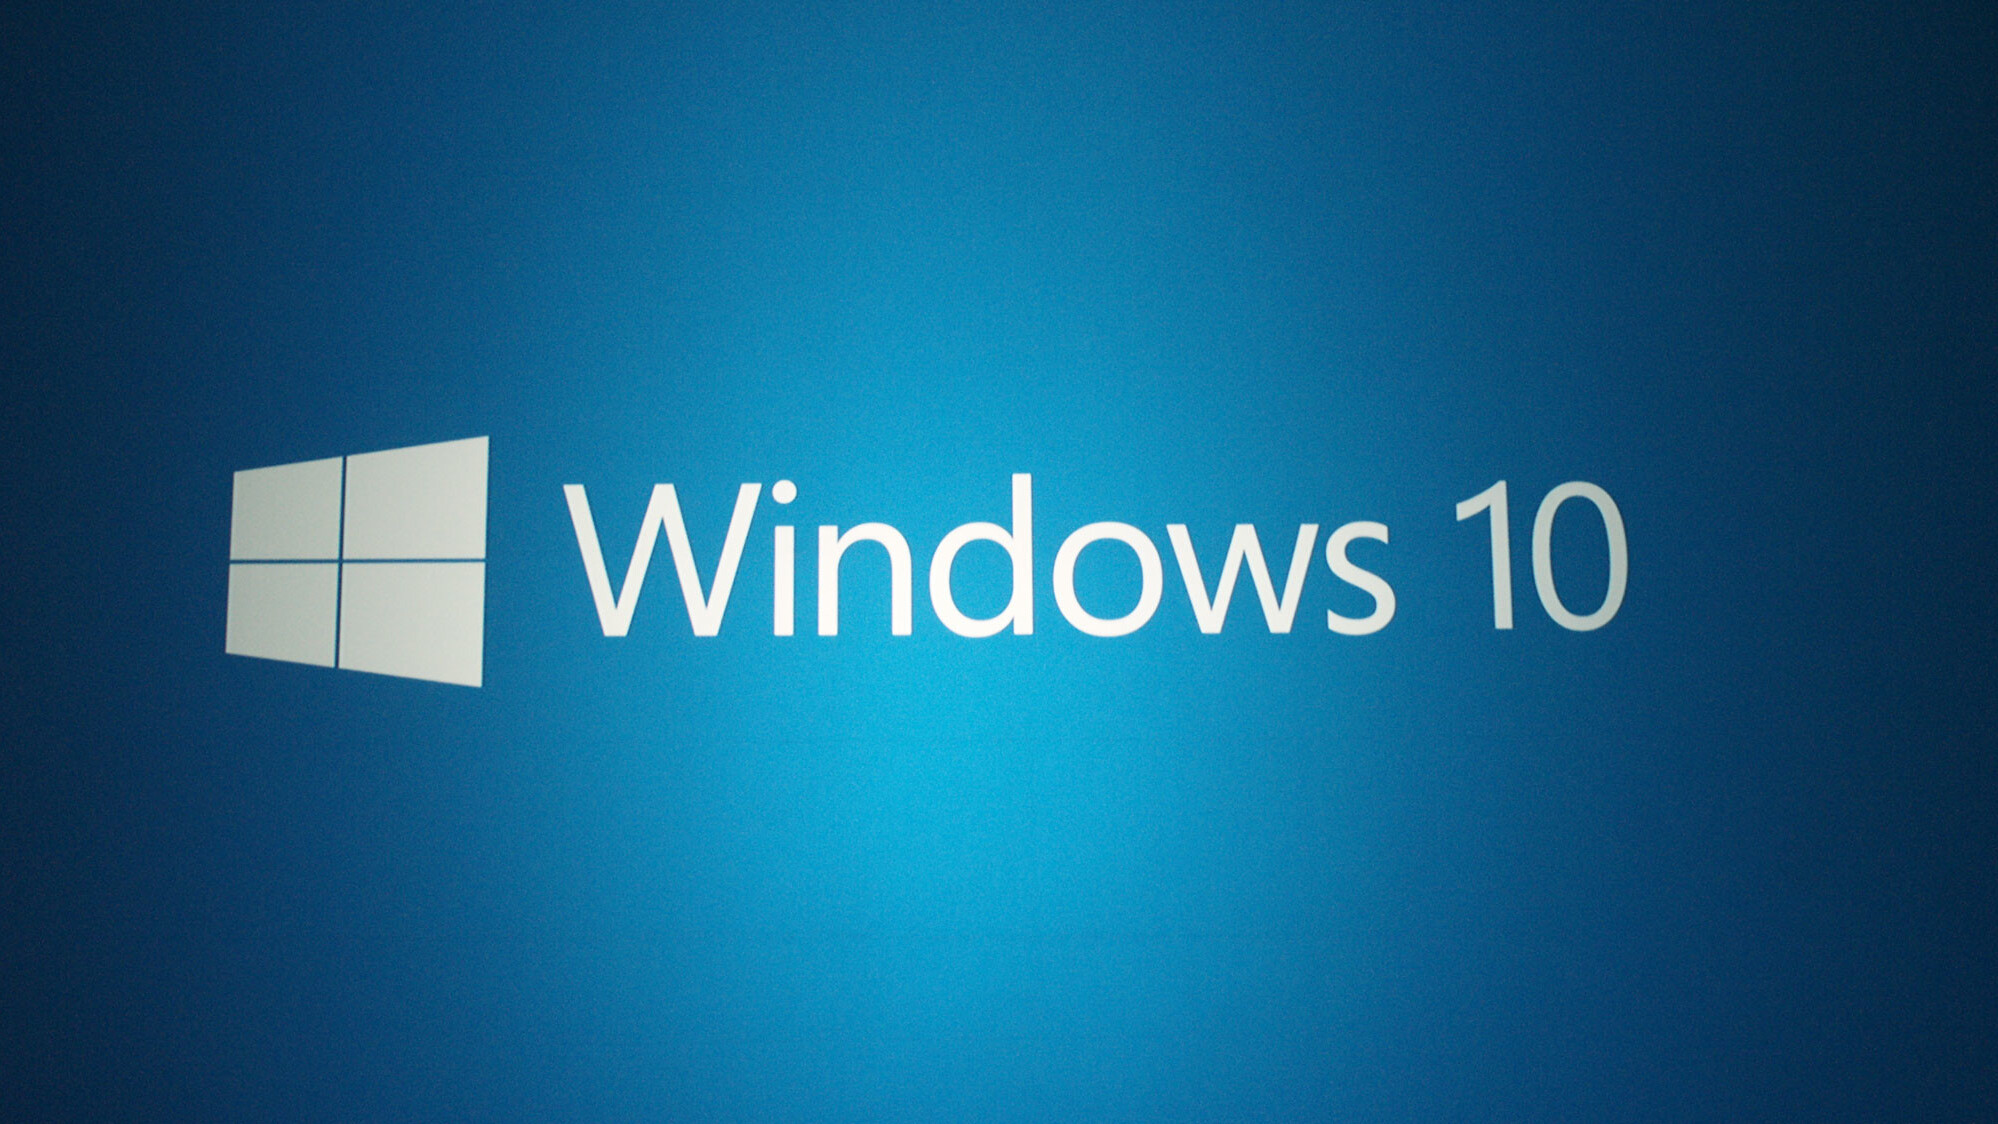 Liveblog: Microsoft’s Windows 10 event